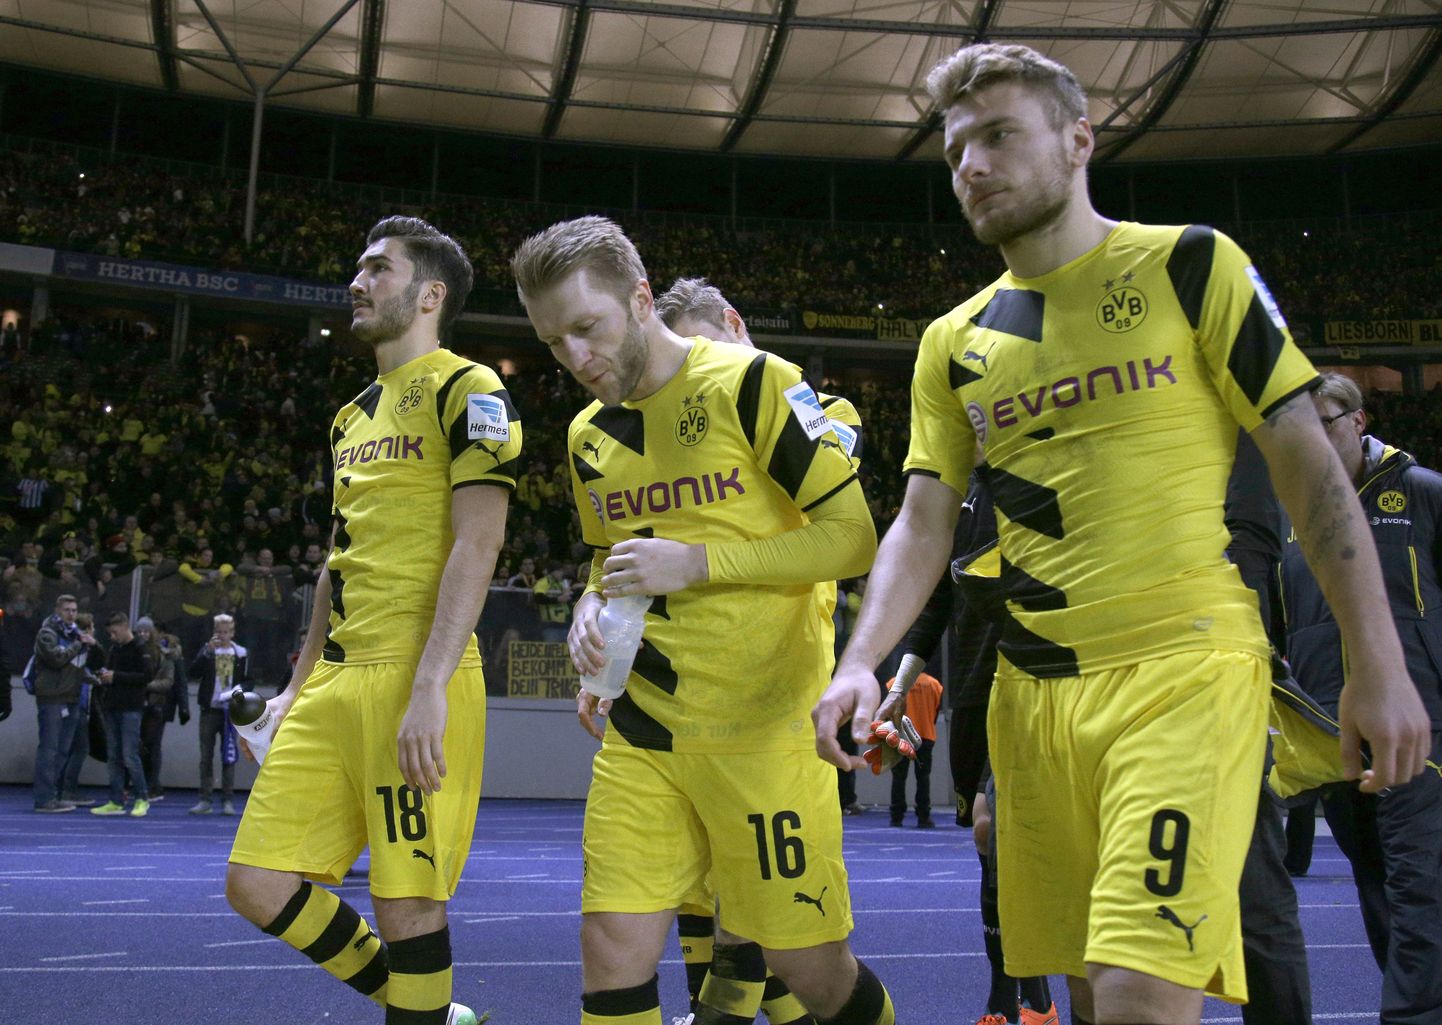 Dortmundi mängijad.